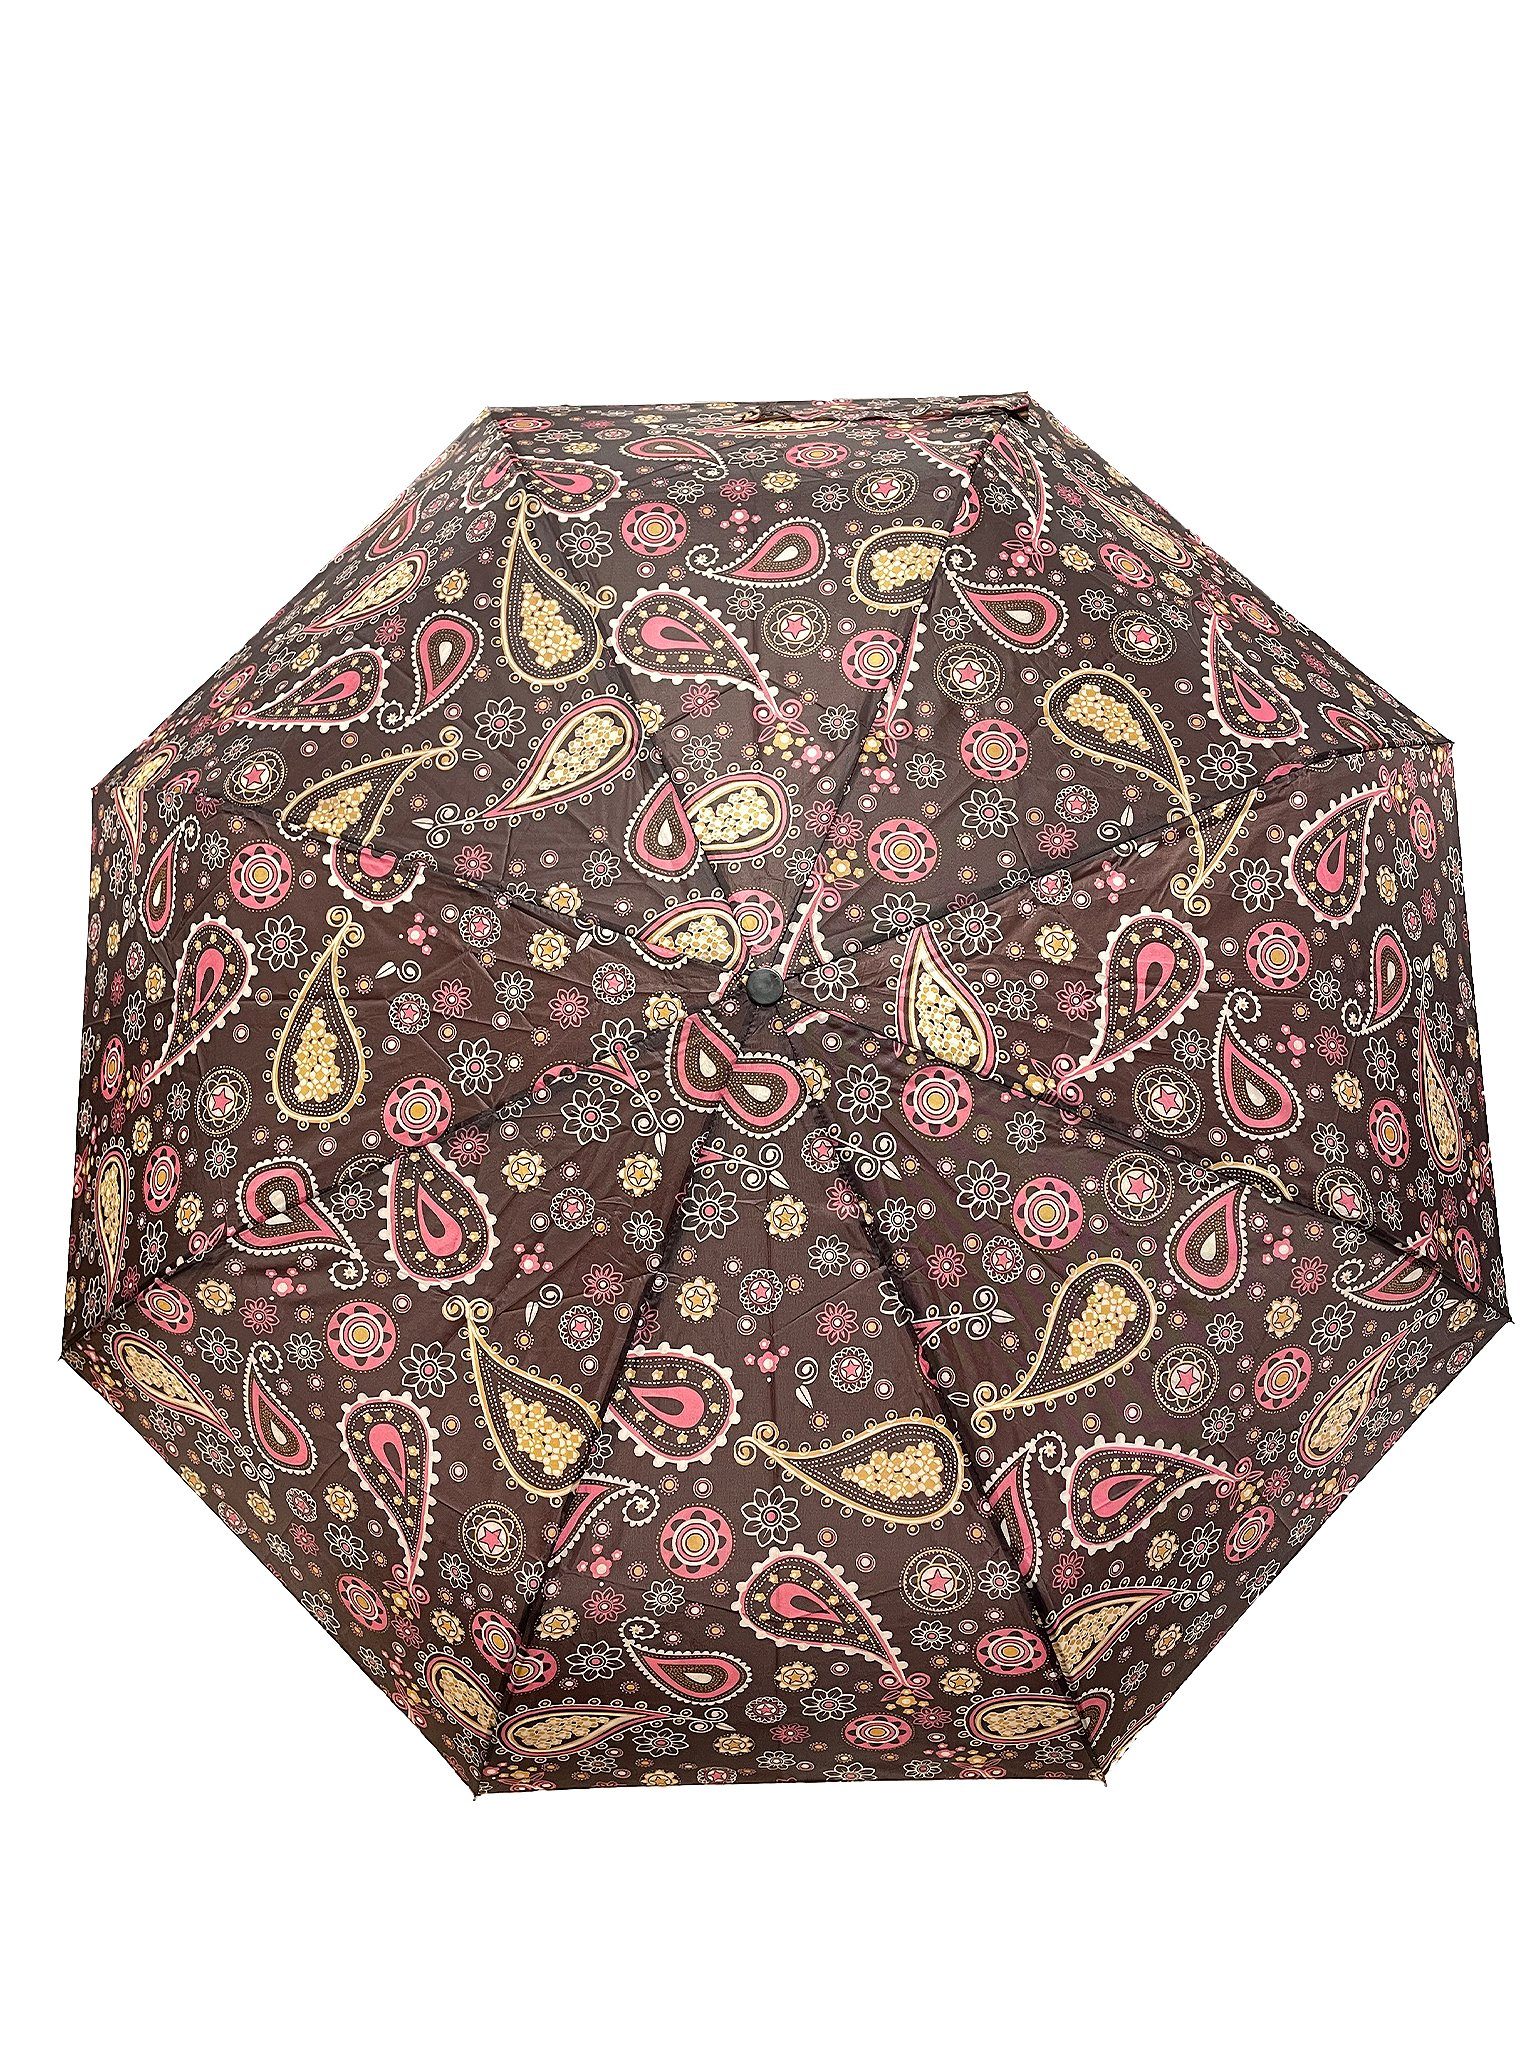 ANELY Taschenregenschirm Kleiner Regenschirm Gemustert Taschenschirm, Paris 6746 in Braun